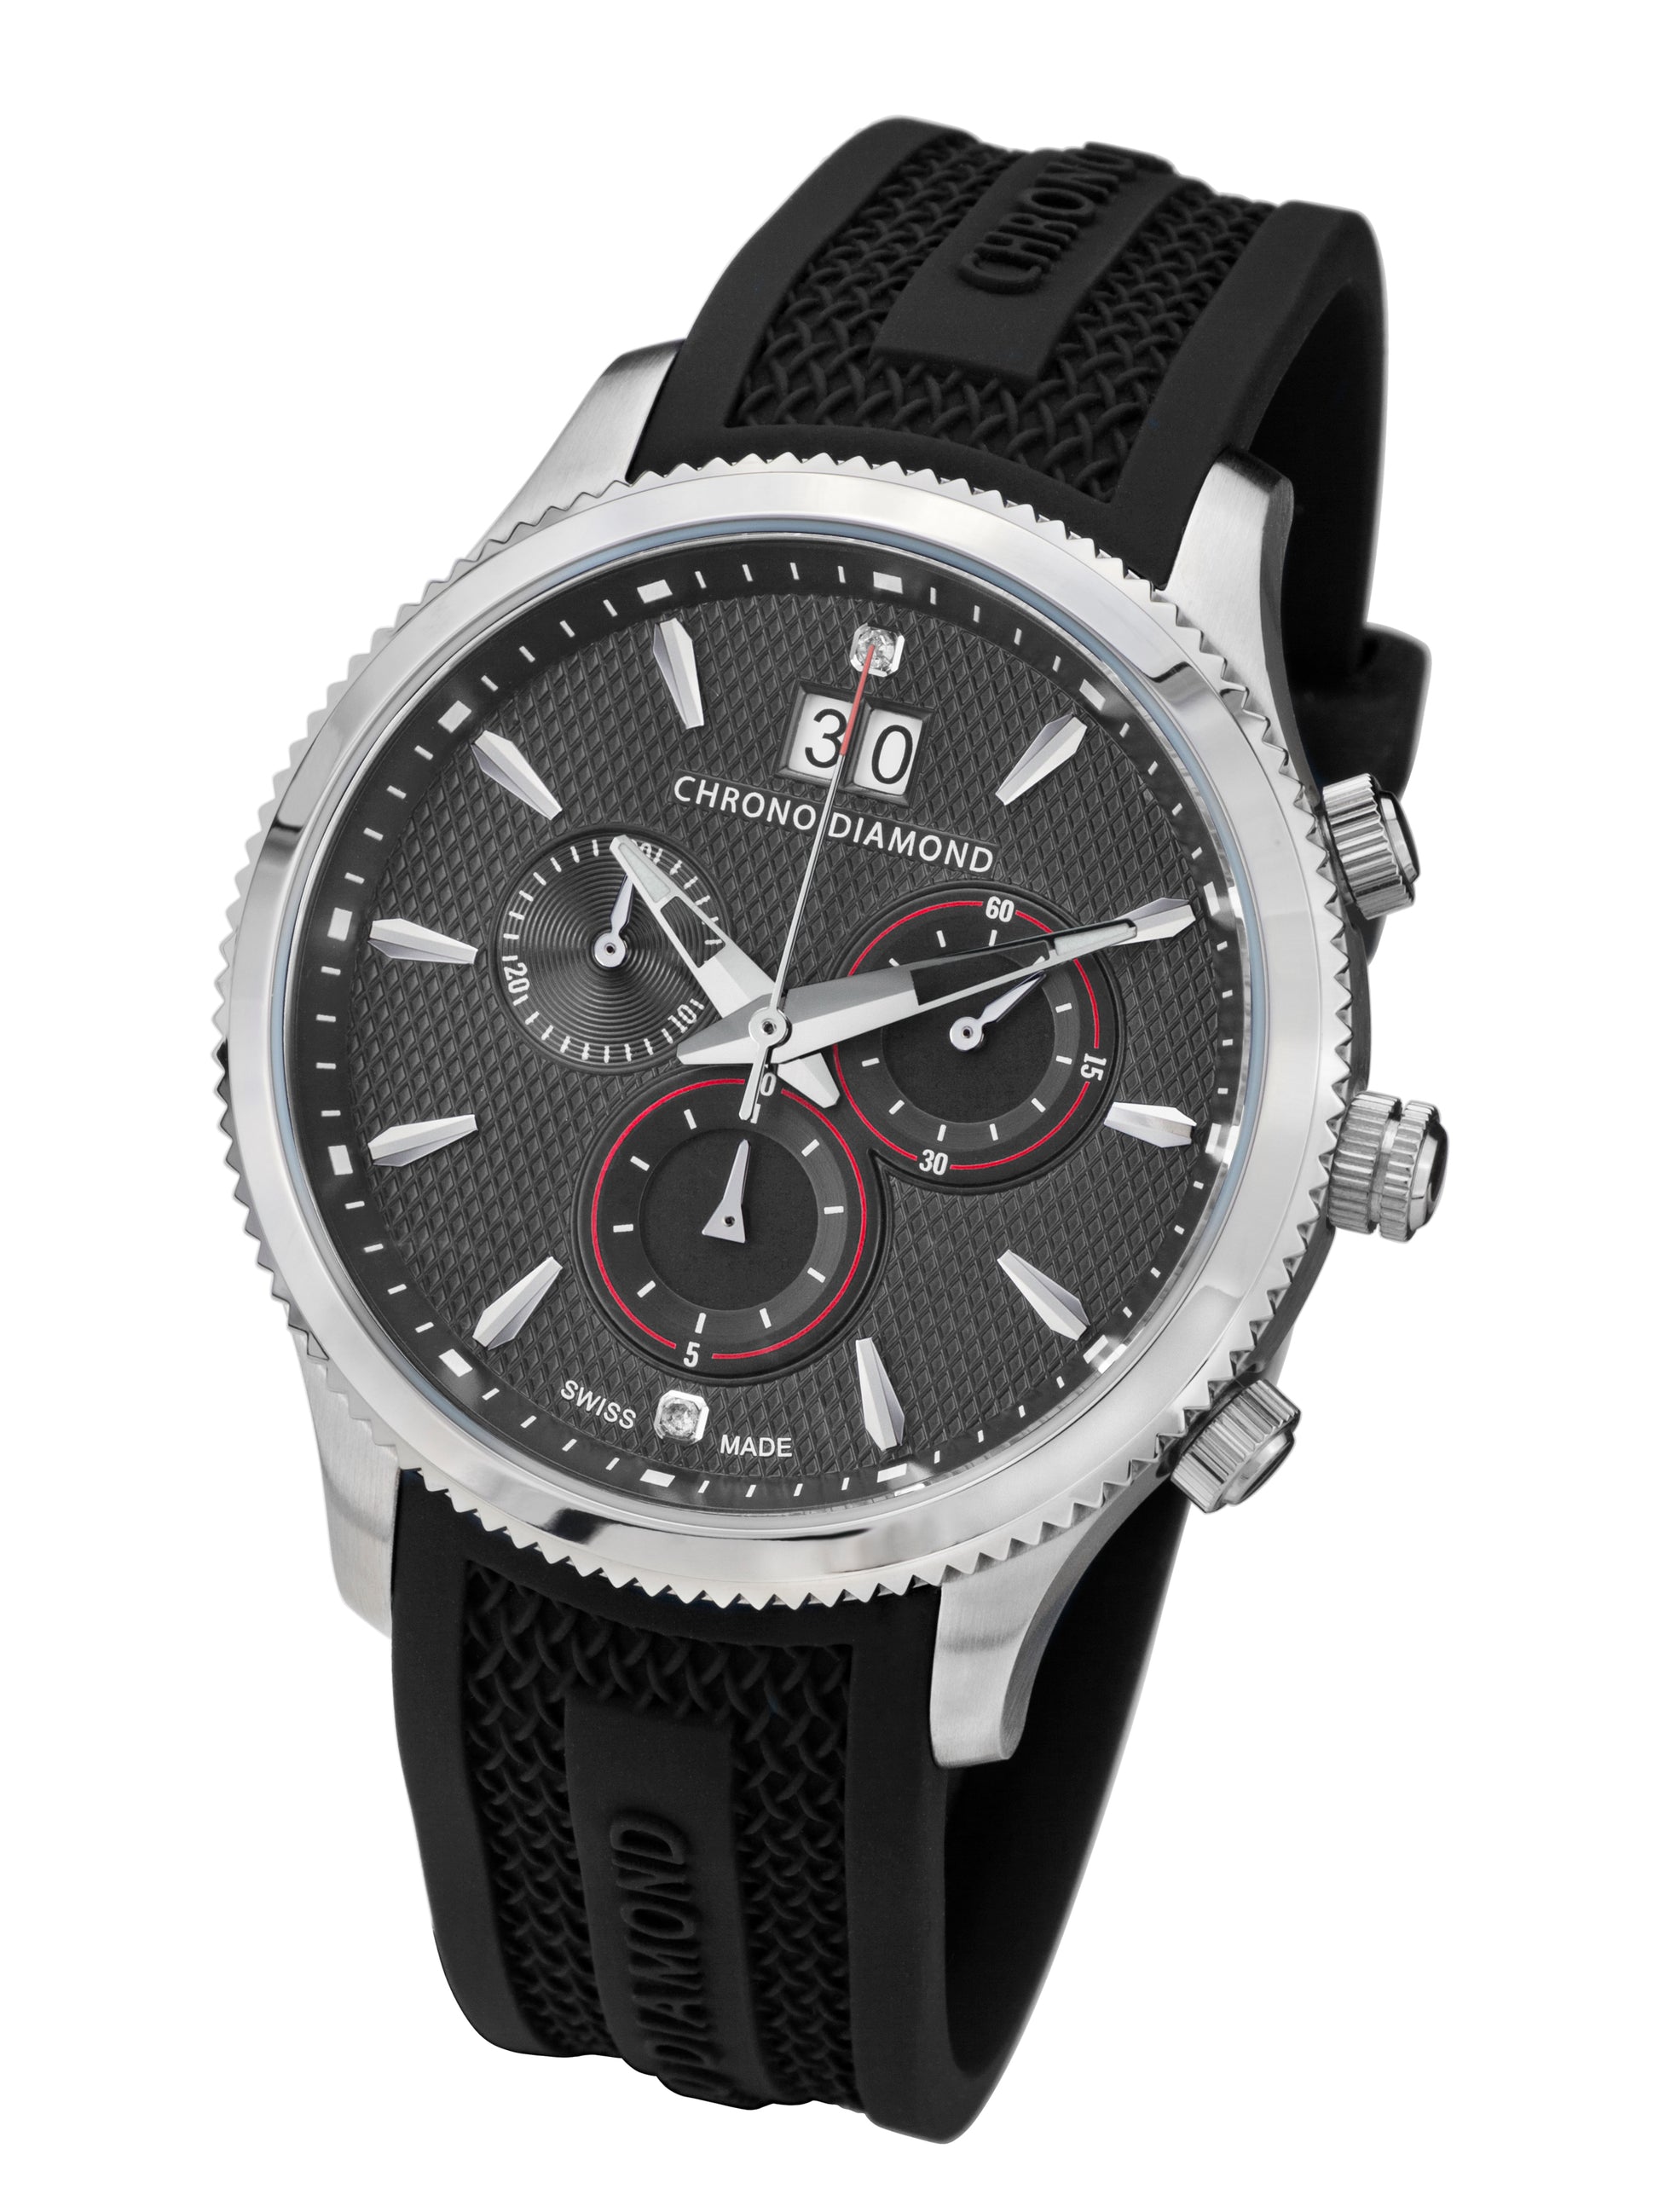 Automatic watches — Okeanos — Chrono Diamond — steel grey